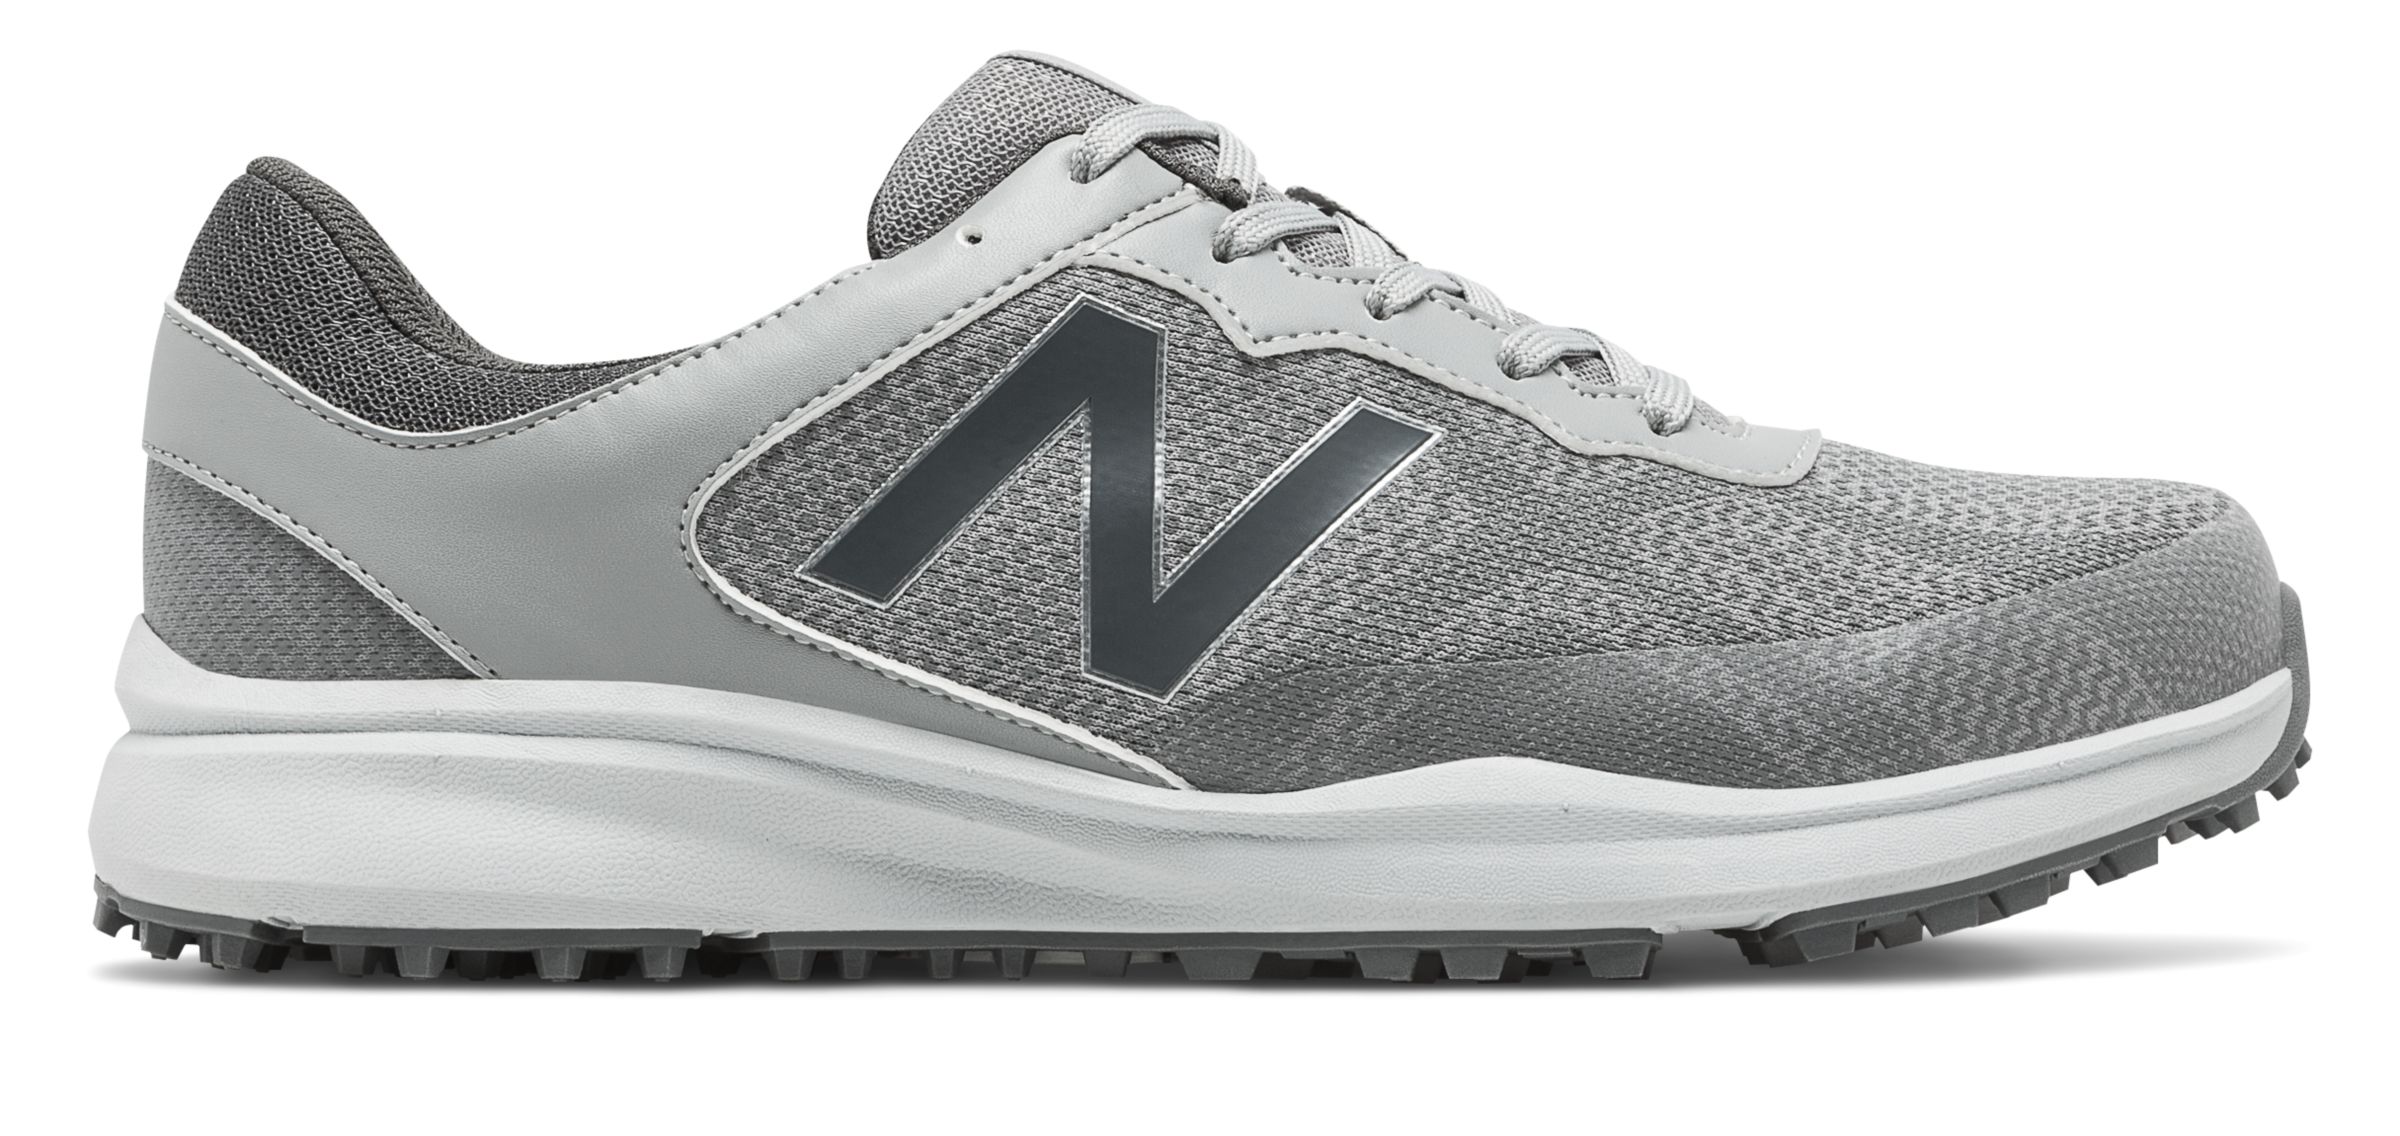 new balance spikeless golf shoes